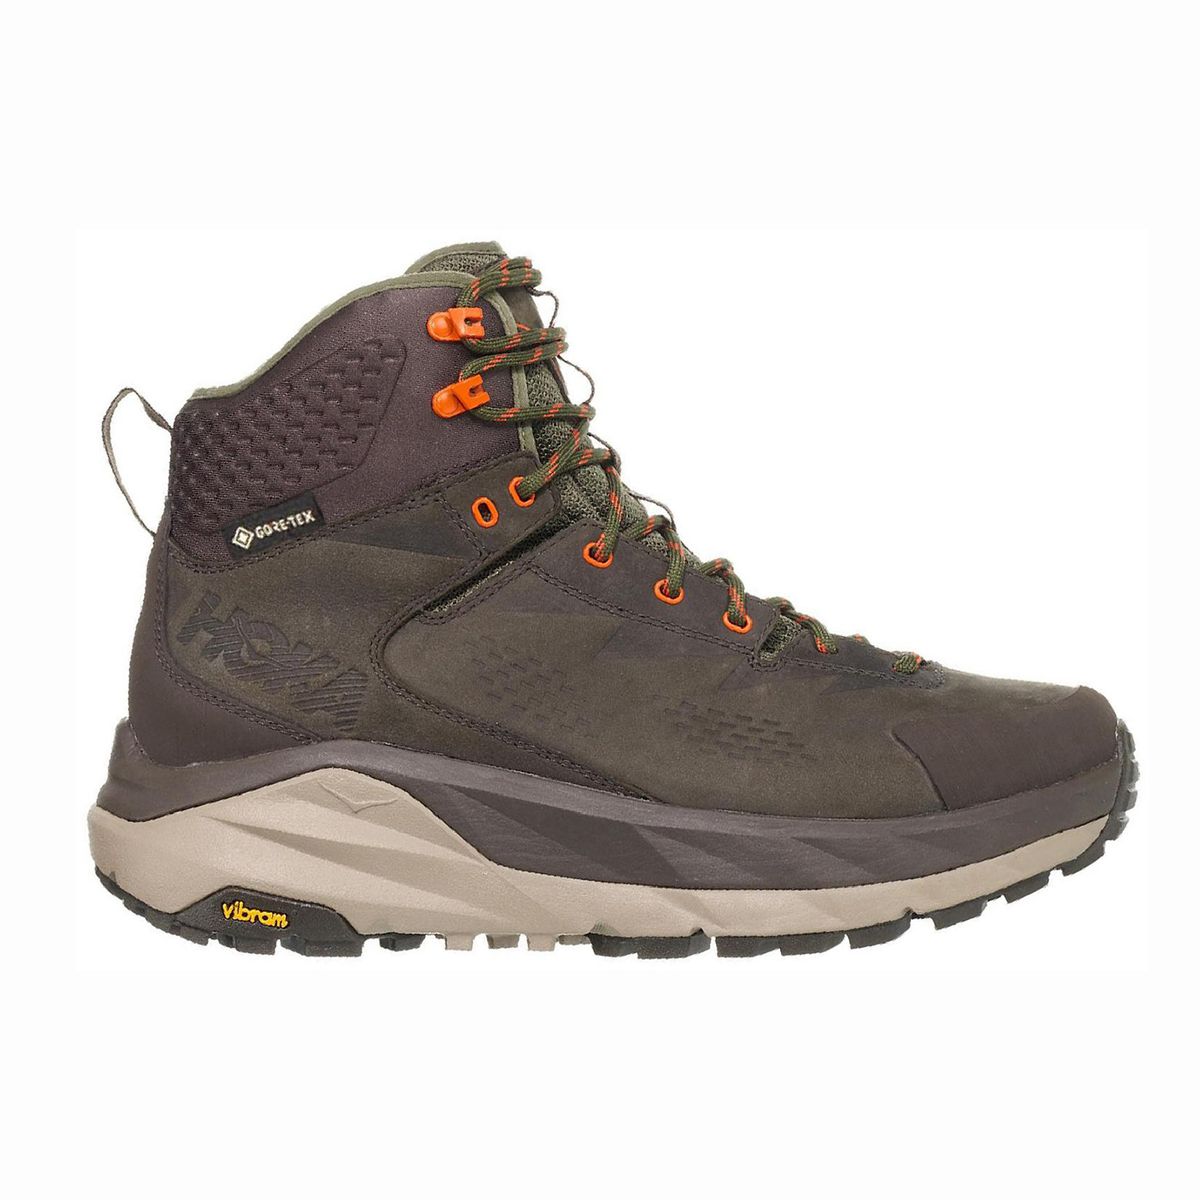 HOKA ONE ONE Sky Kaha GORE-TEX Hiking Boots - Men's